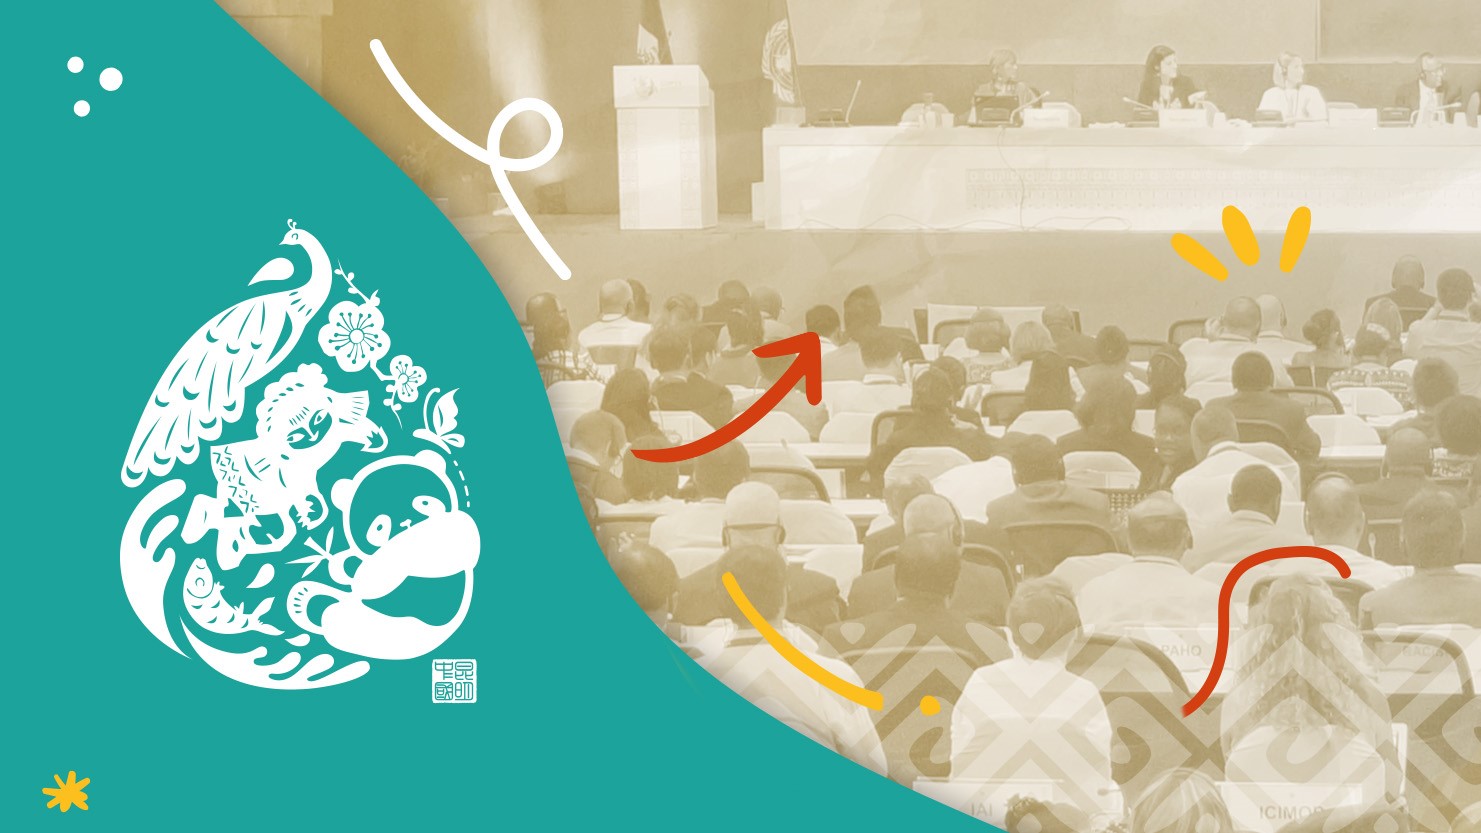 Les principaux évènements du Consortium APAC à la COP 15